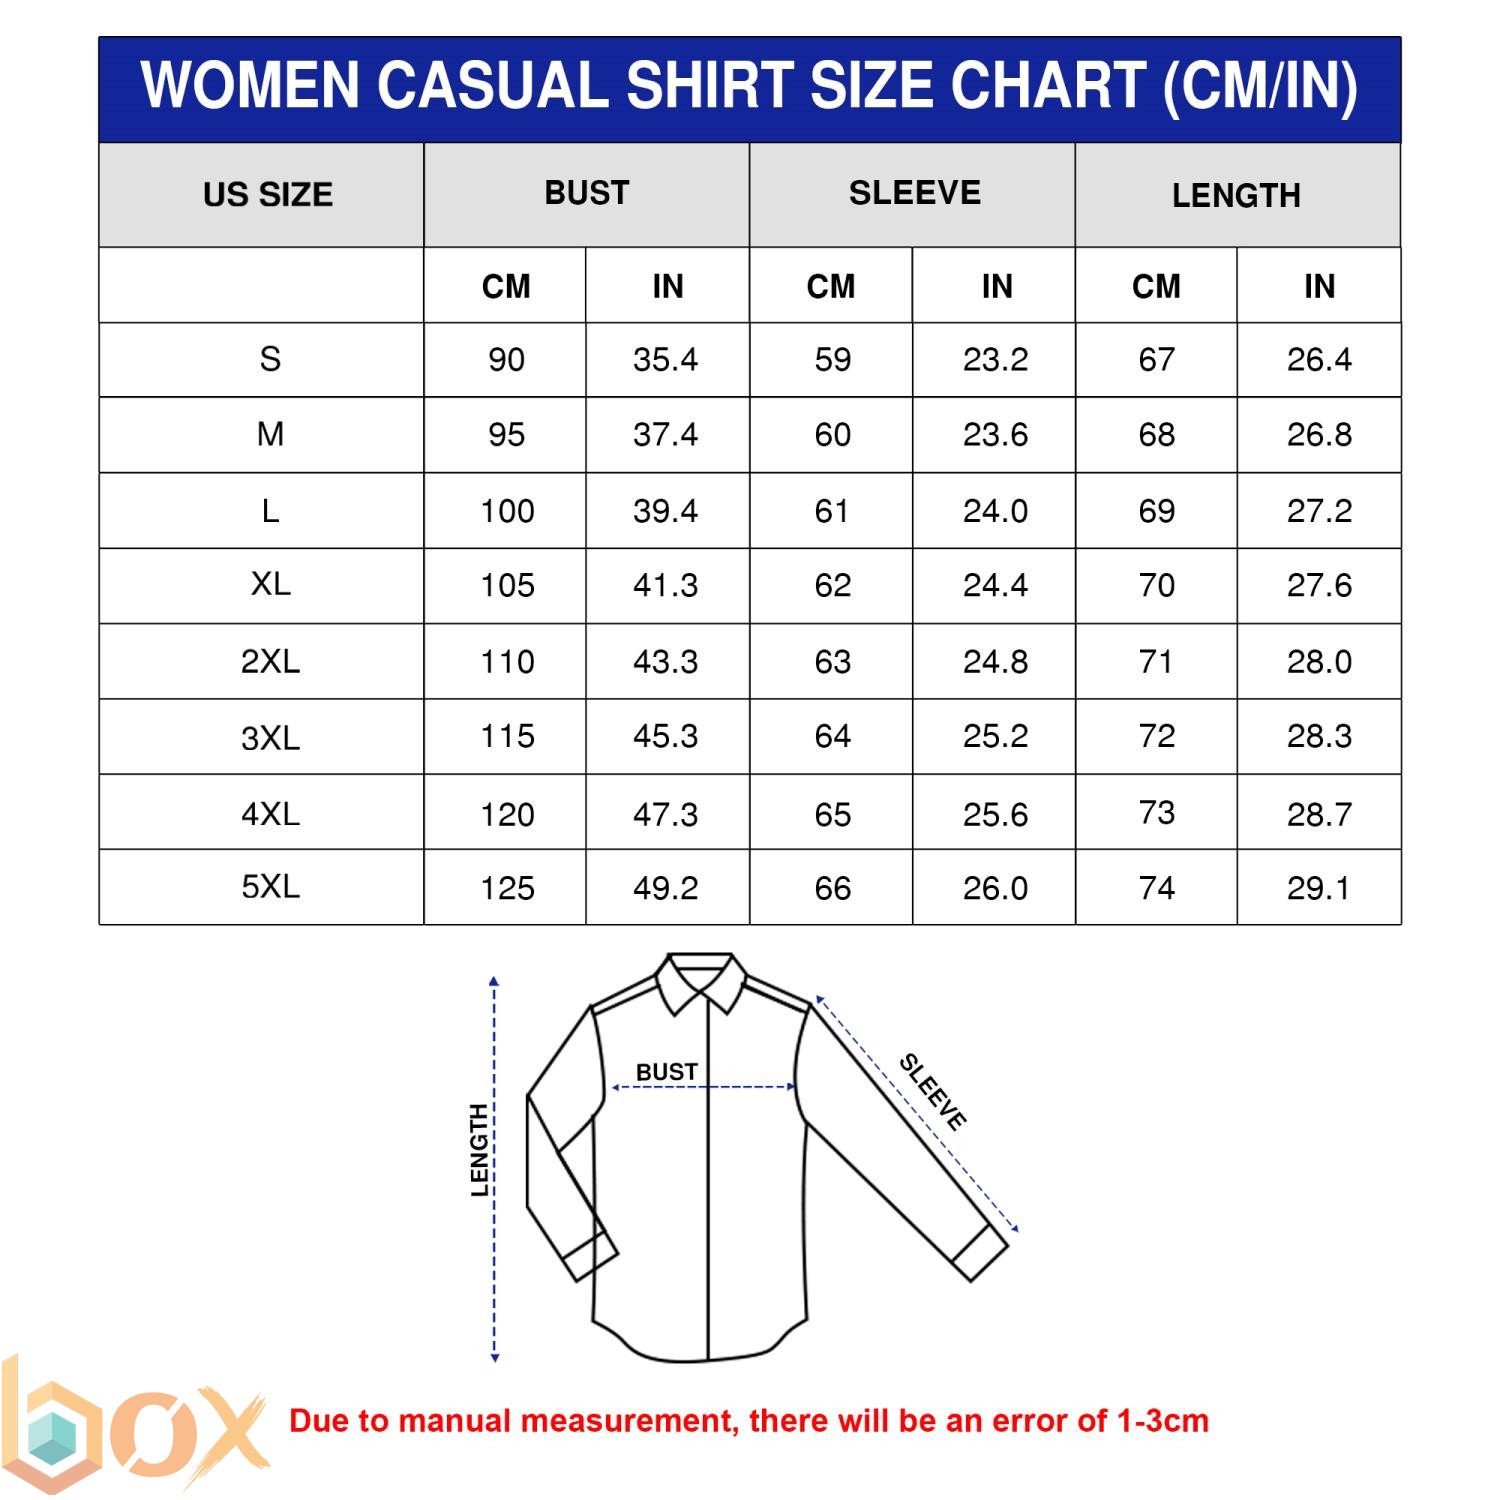 Women's Casual Shirt Size Chart: